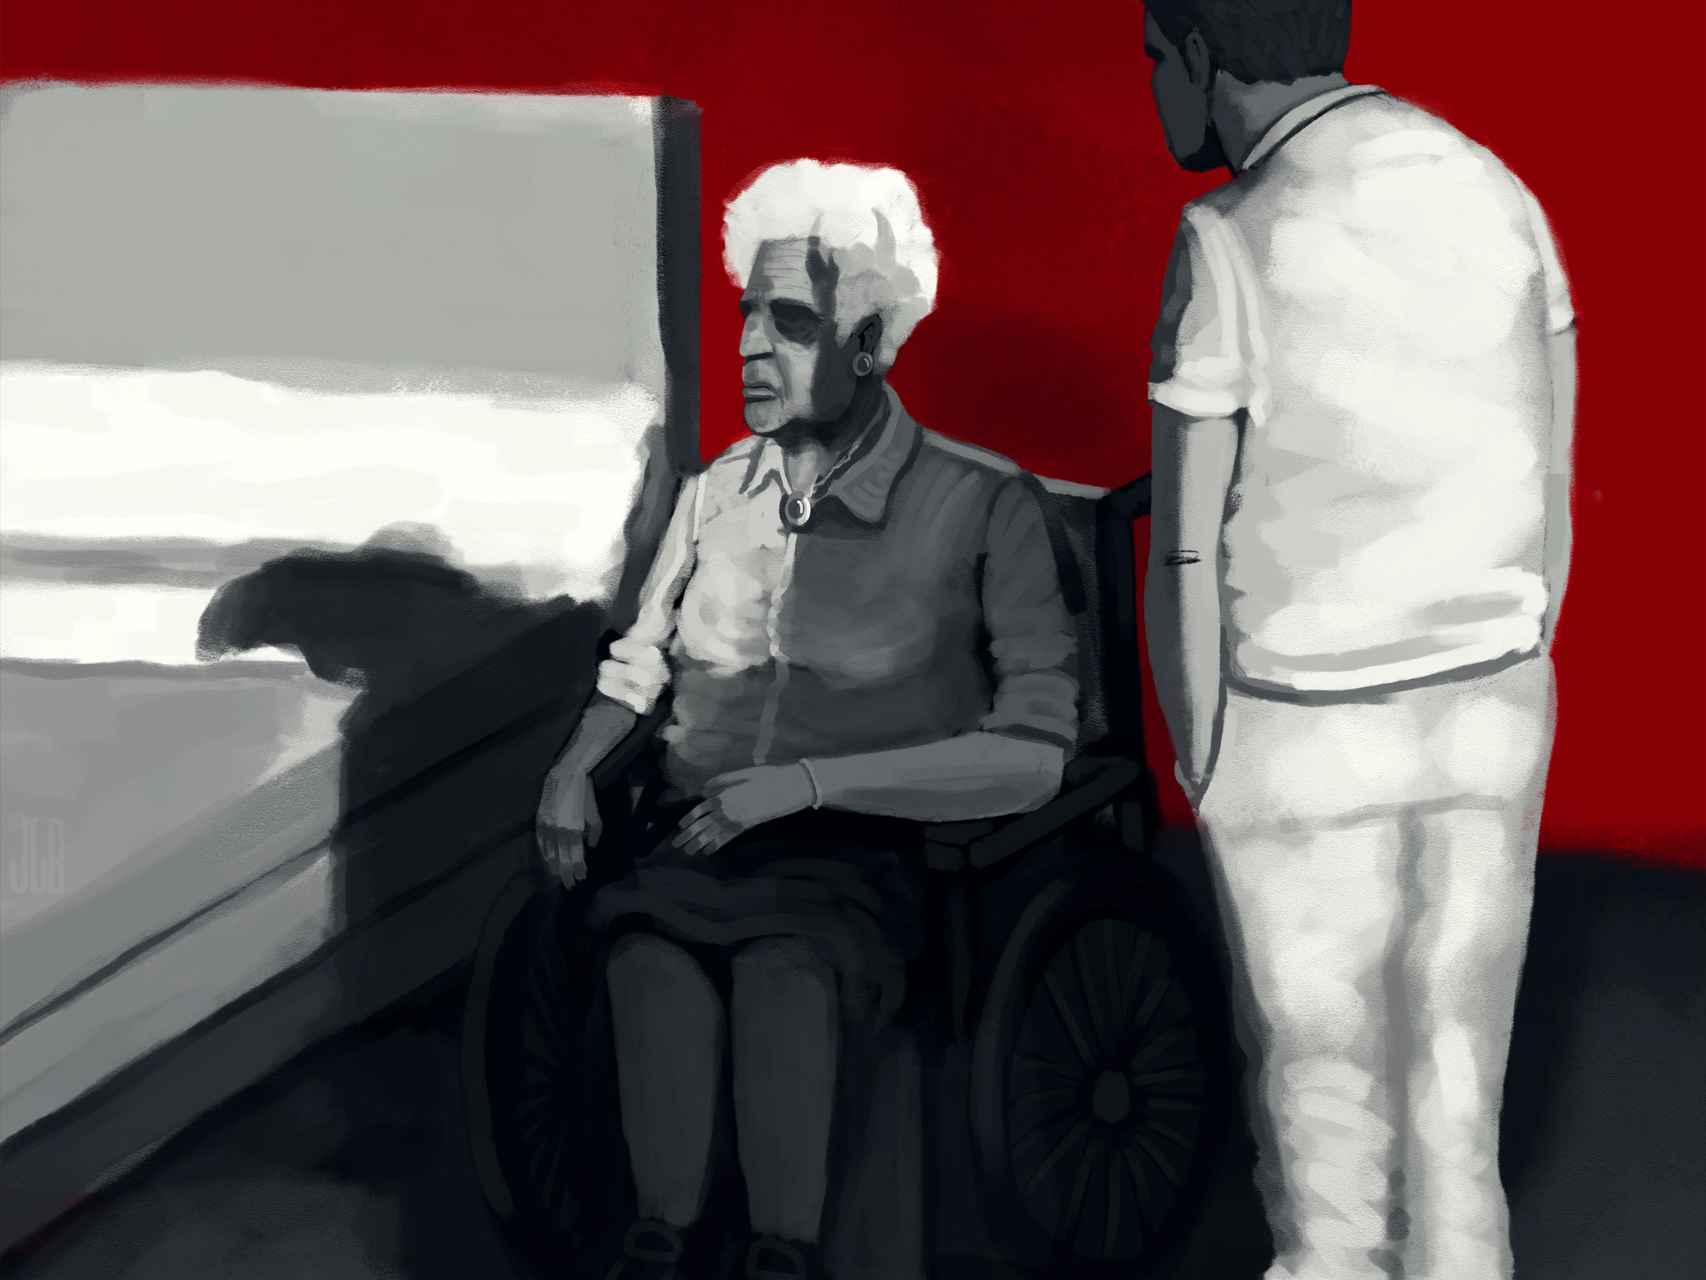 El violador del geriátrico eligió a las mujeres más ancianas y enfermas